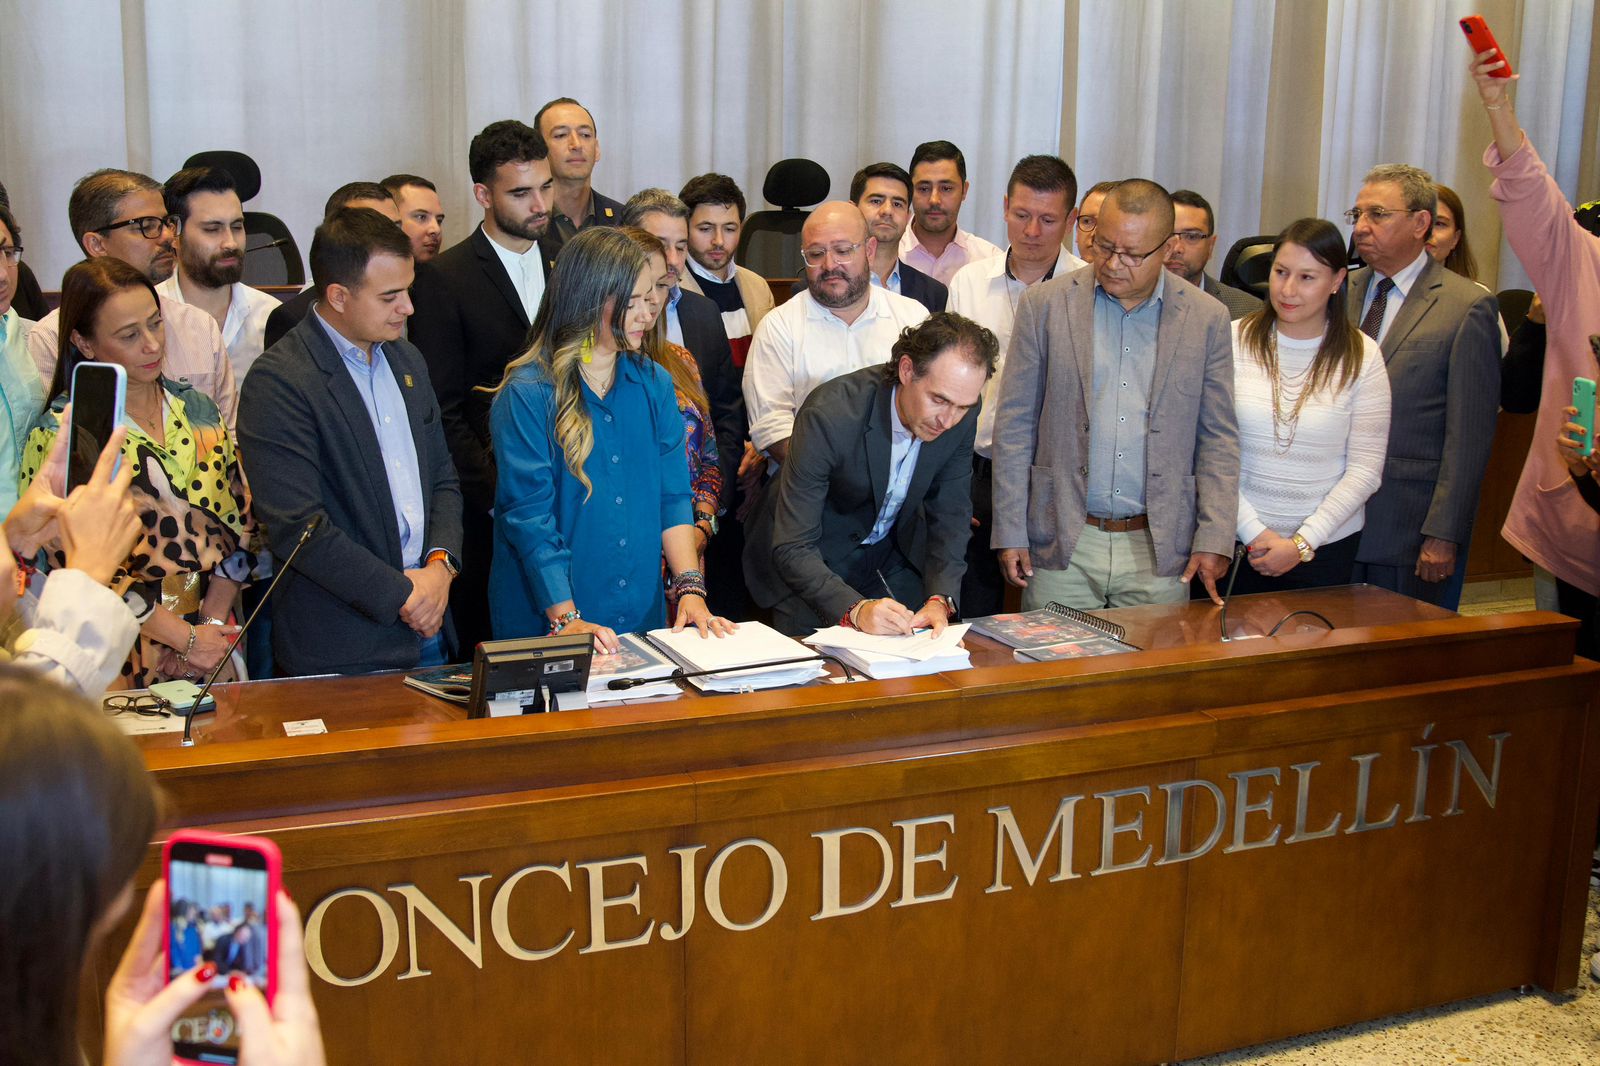 Los proyectos que incluyó Fico en el Plan de Desarrollo de Medellín